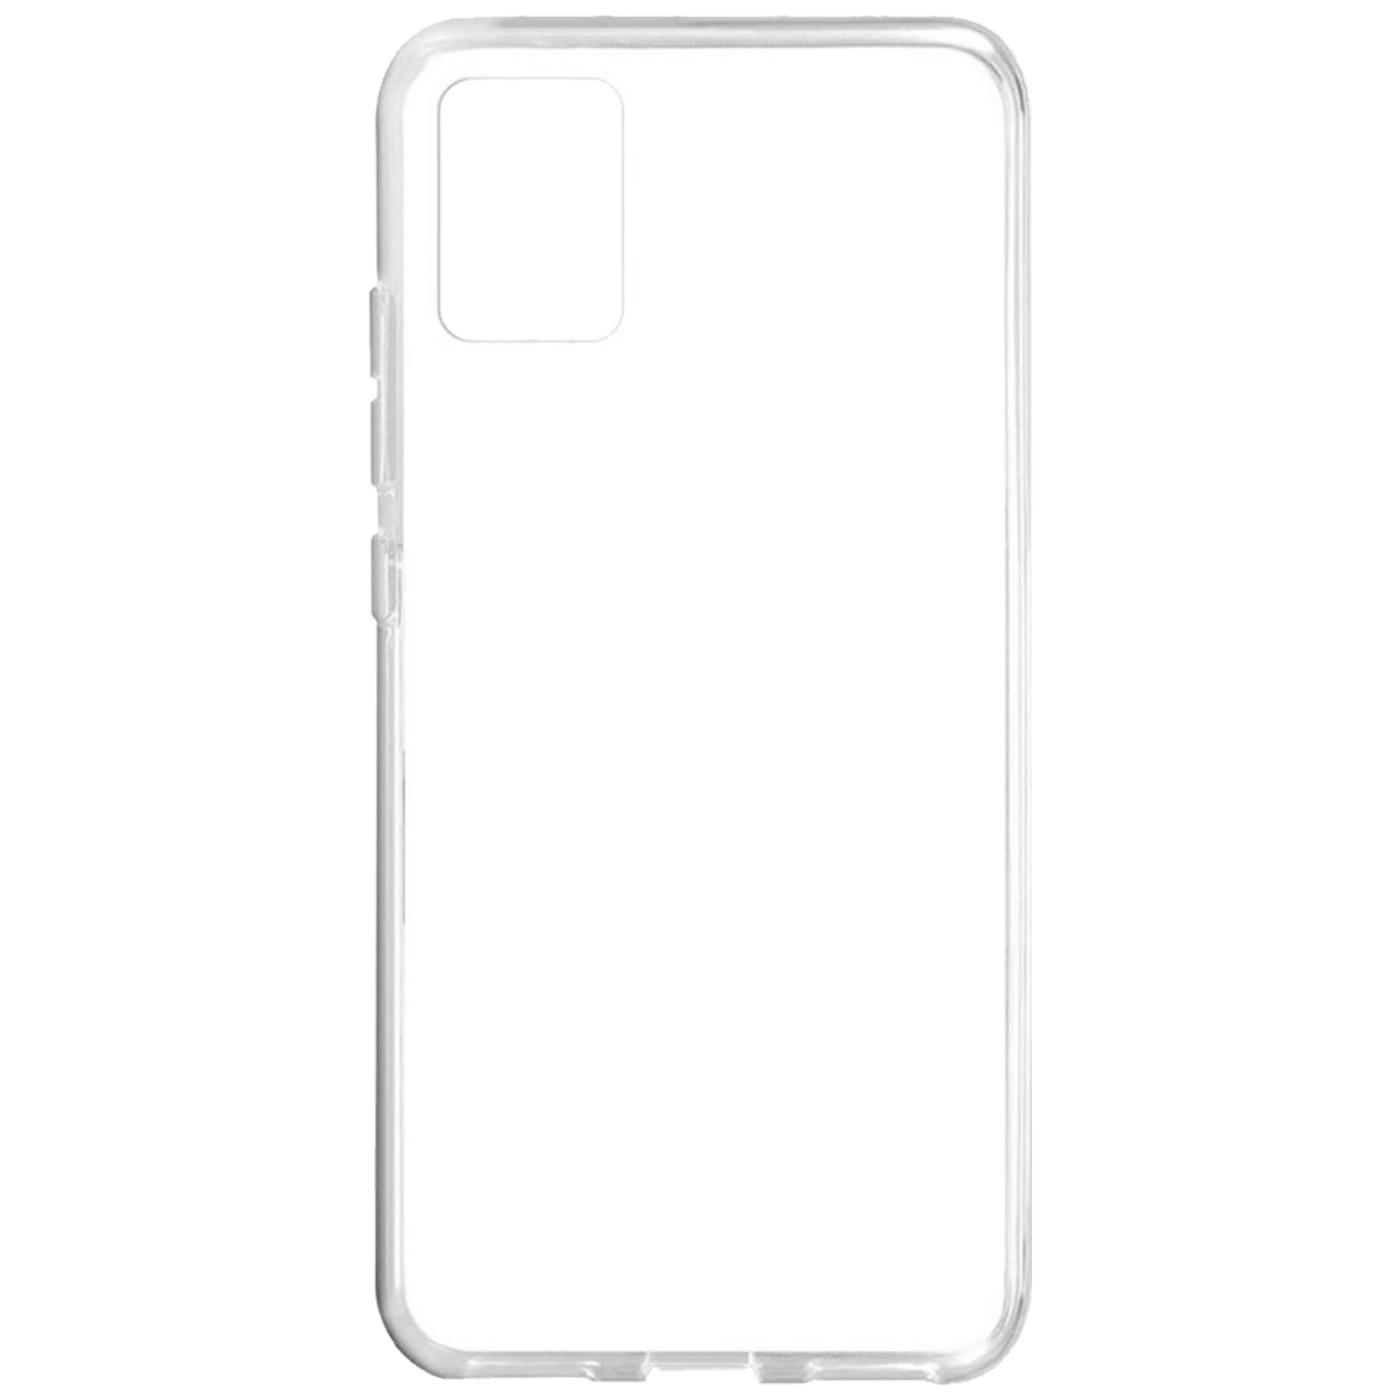 Futrola za mobitel Samsung A51, silikonska, transparent